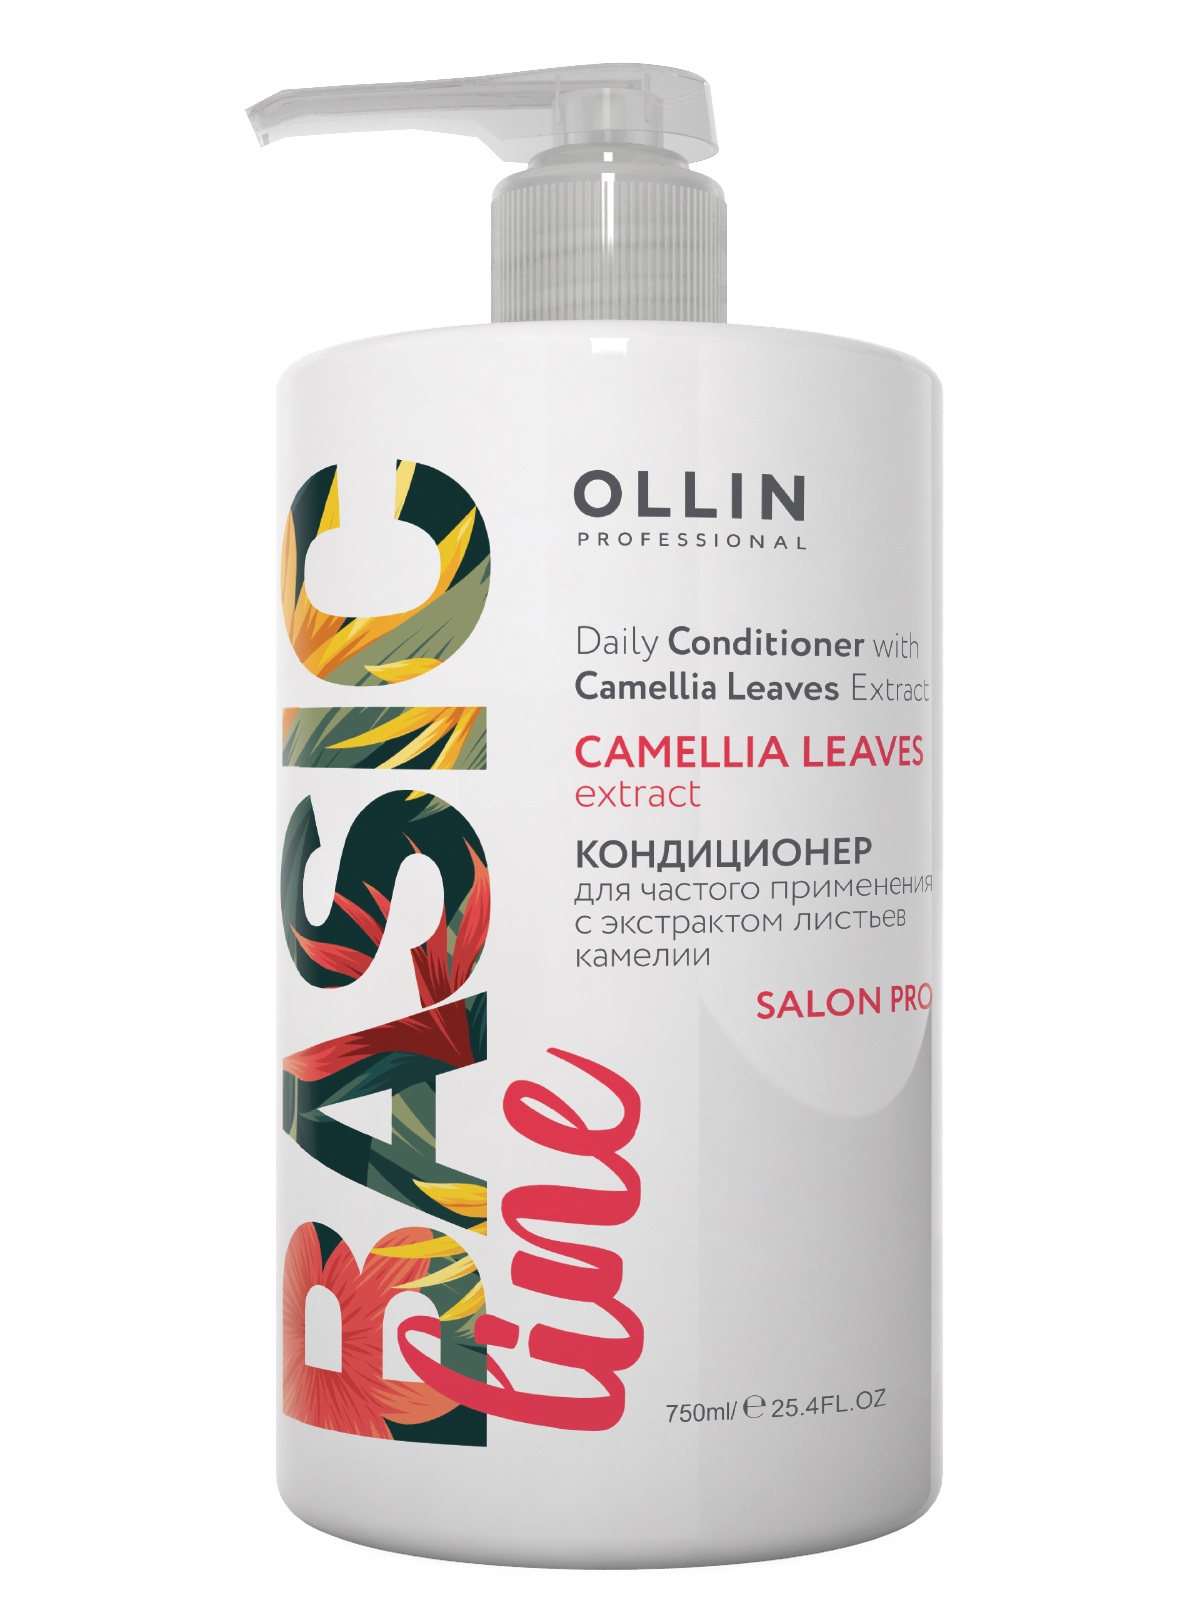 Кондиционер для волос Ollin Professional Camellia Leaves Extract 750 мл кондиционер для частого применения с экстрактом листьев камелии daily conditioner ollin basic line